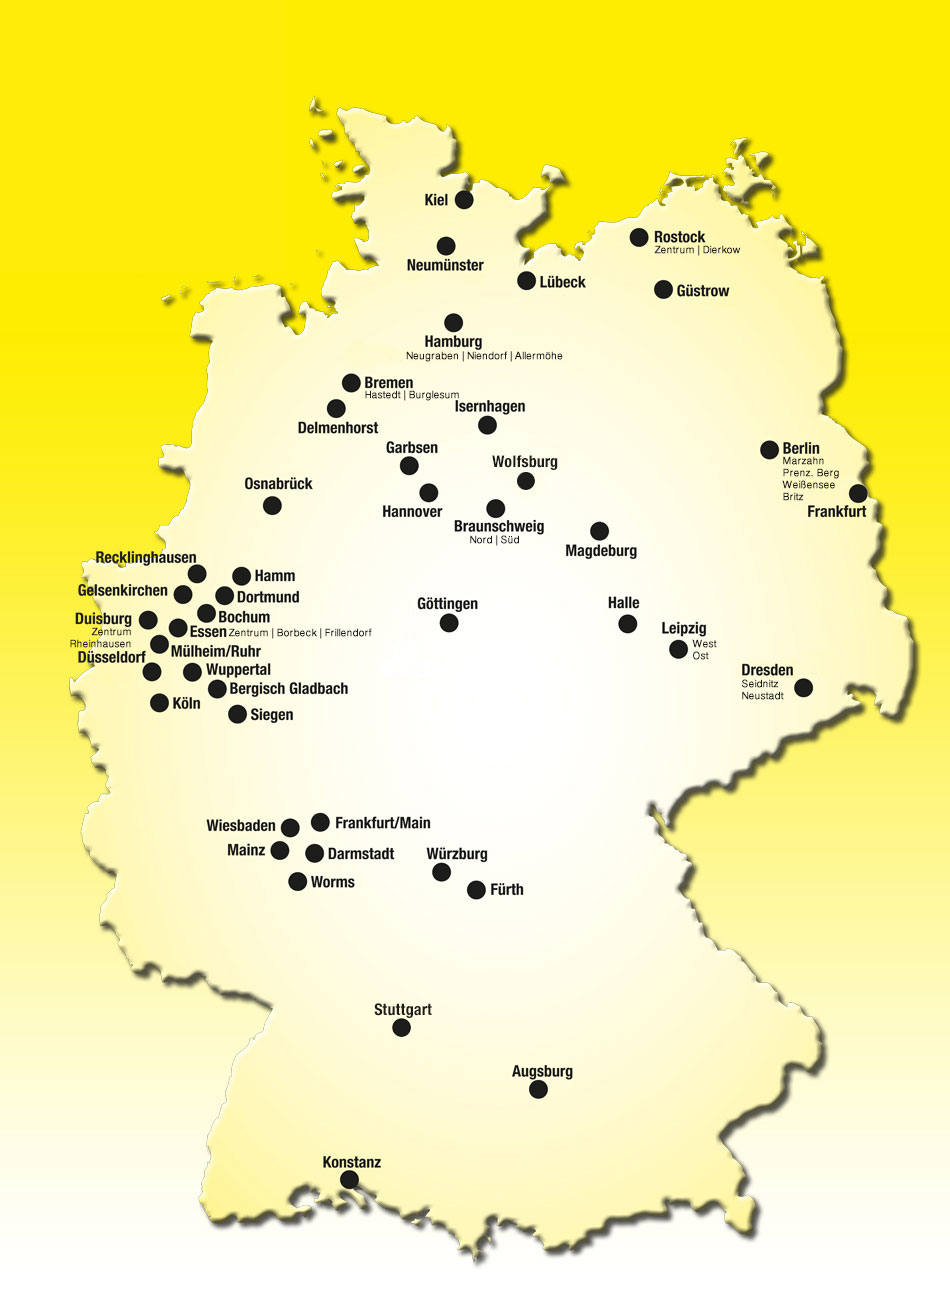 Quick Reifendiscount Filialnetz Deutschland Karte